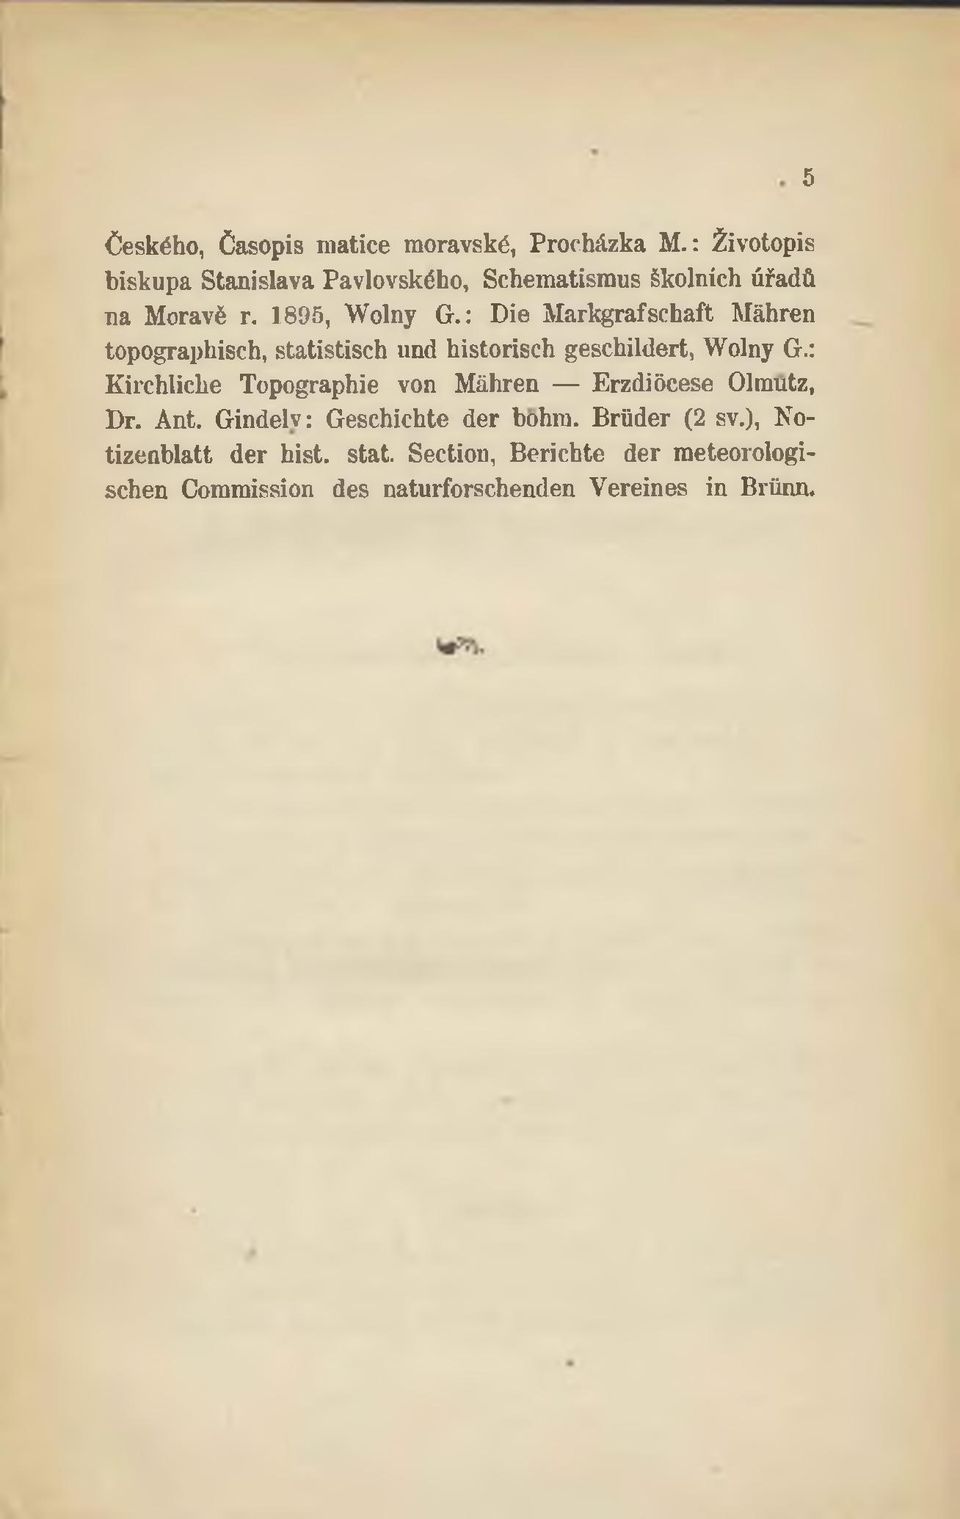 : Die Markgrafschaft Máhren topographisch, statistisch und historisch geschildert, Wolny G.